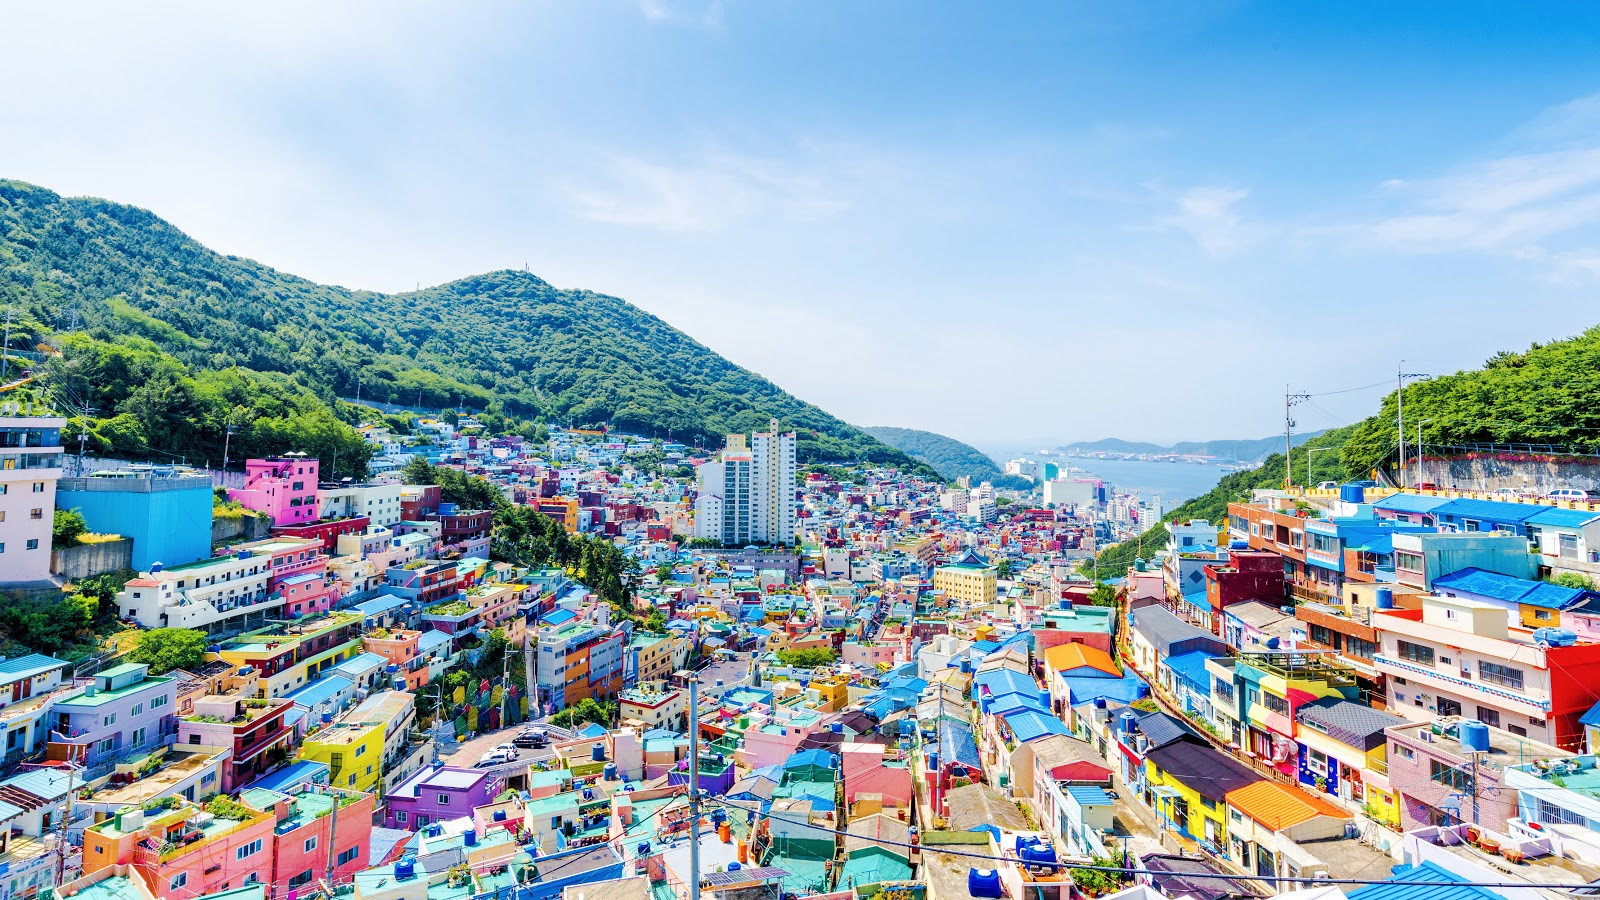 Thành phố Busan với những ngôi nhà đầy màu sắc